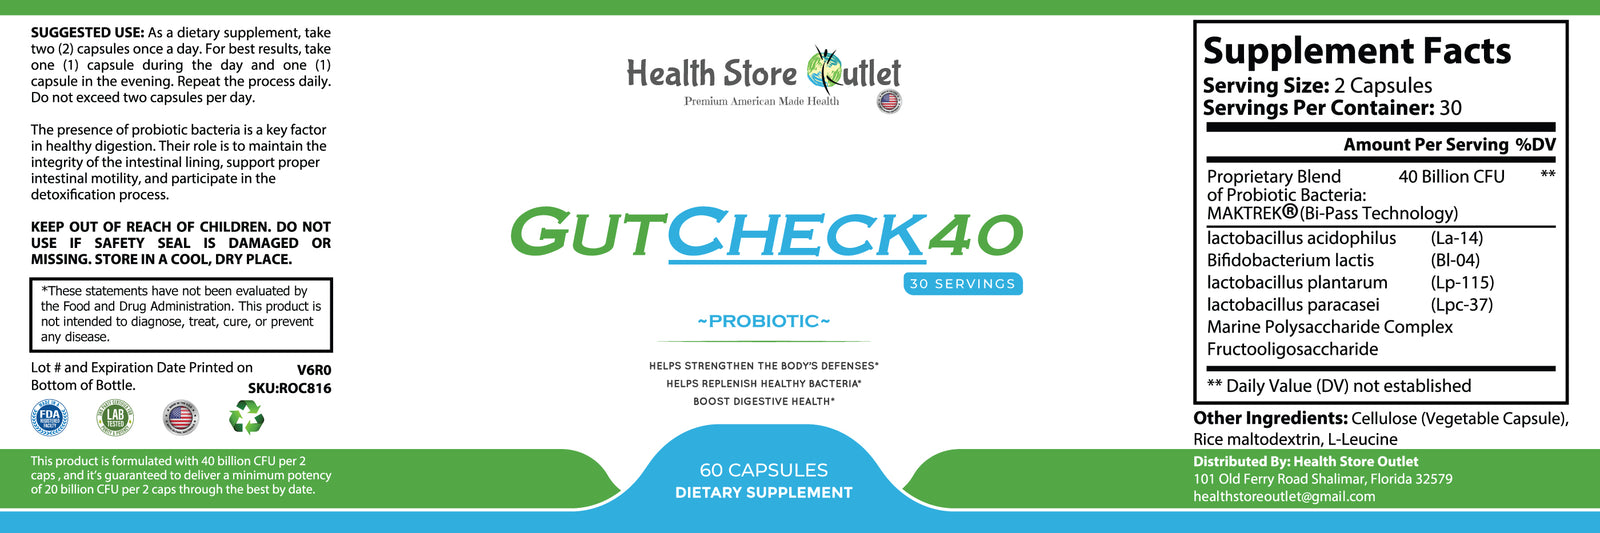 GutCheck40 (maktrek bi-pass technology)